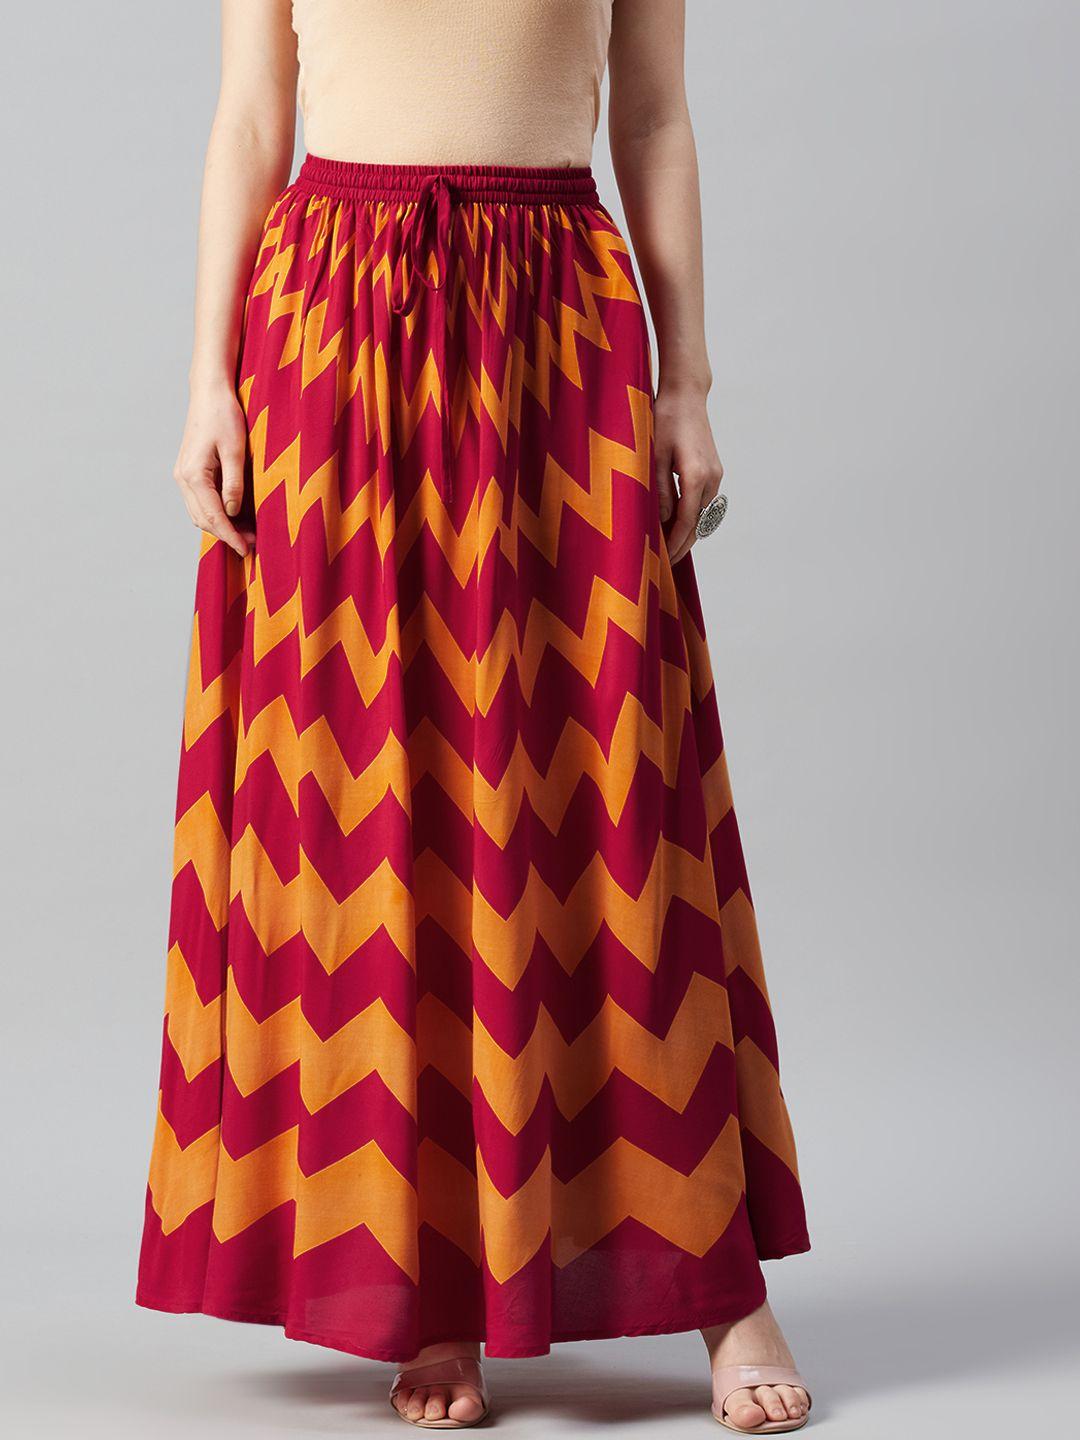 anayna women red & mustard yellow chevron print flared maxi skirt